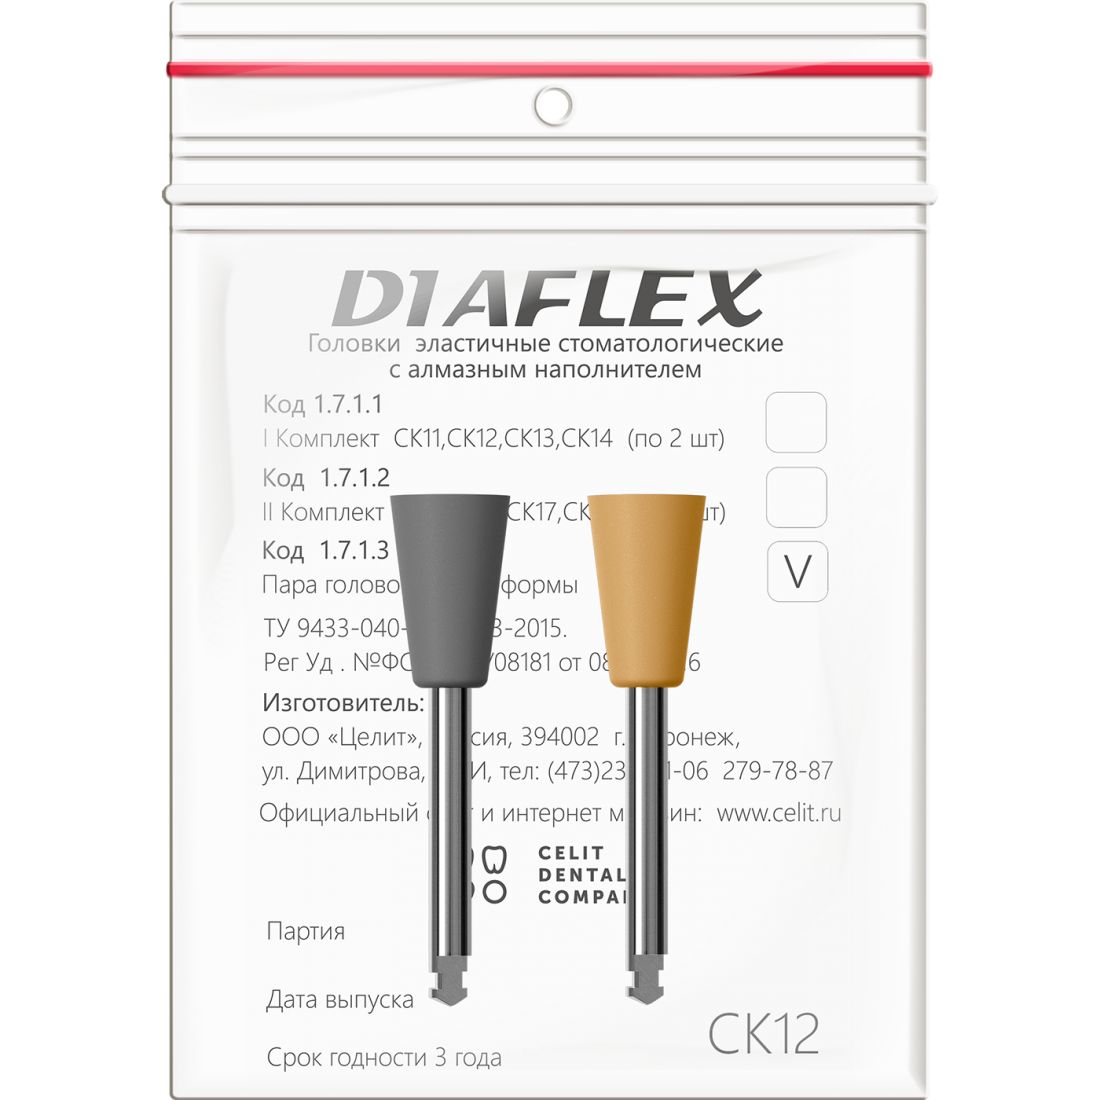 Diaflex композит СК12 - головки Диафлекс для обработки композитов (2шт)